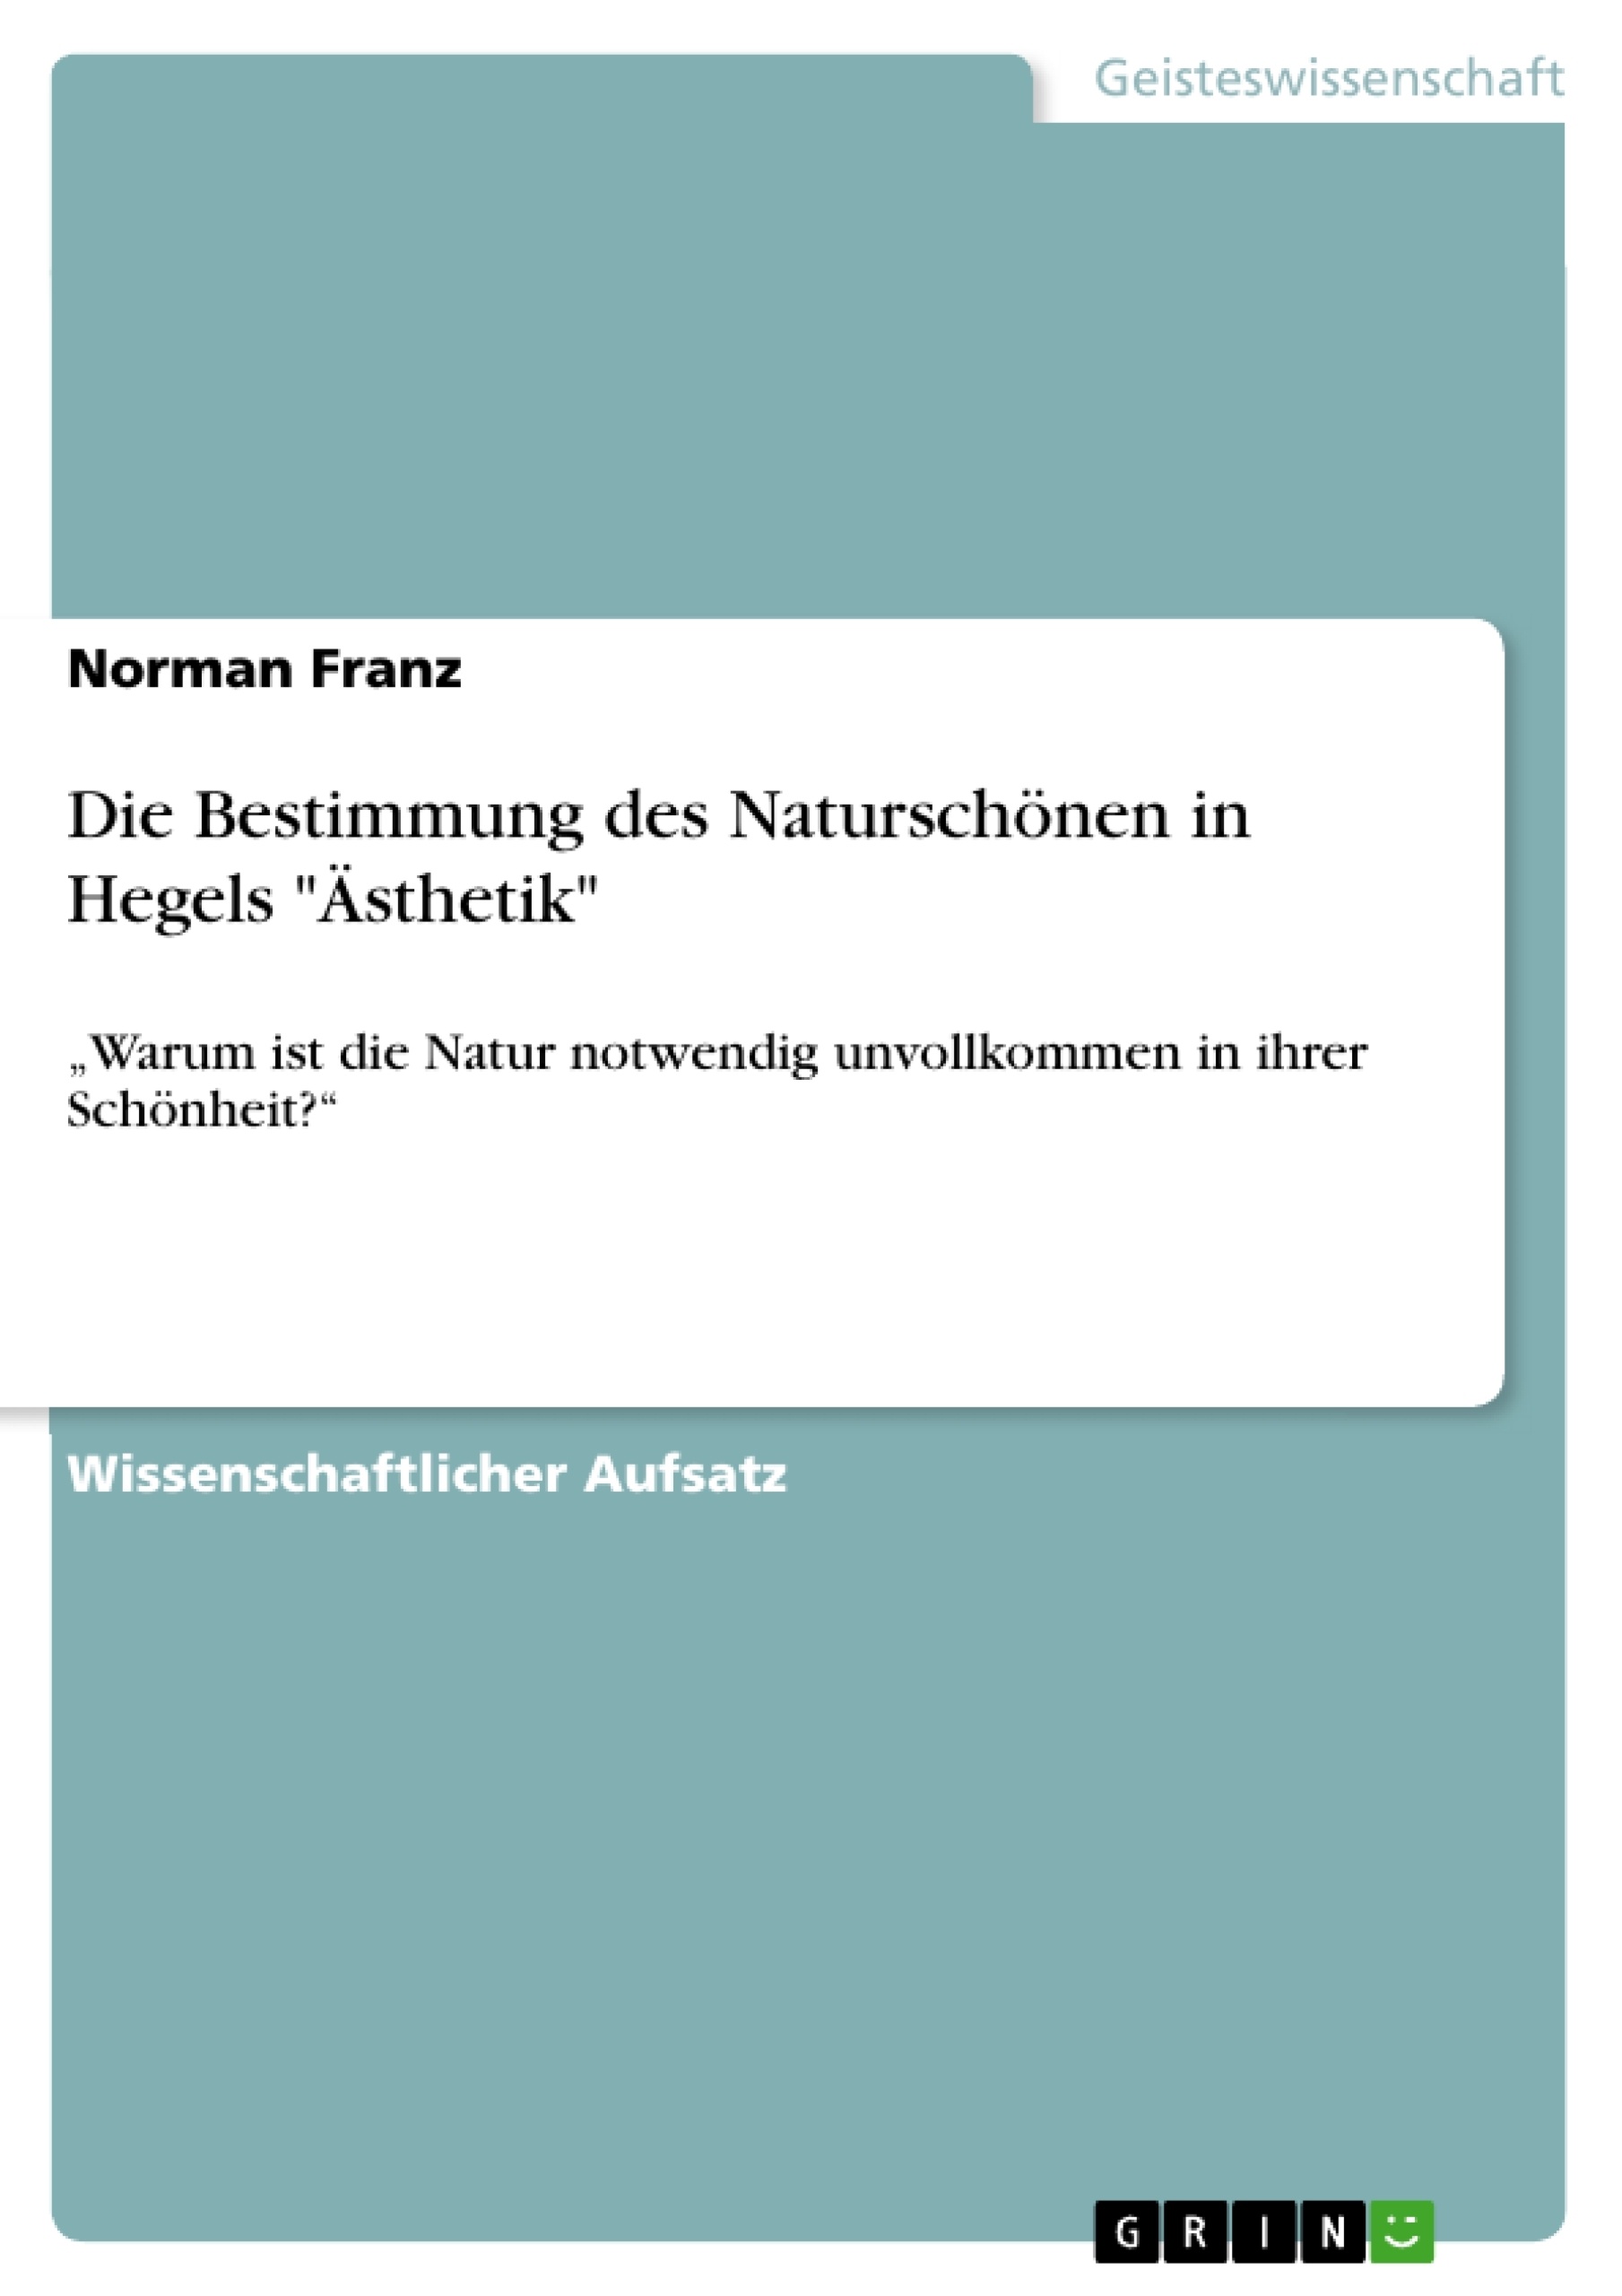 Titre: Die Bestimmung des Naturschönen  in Hegels "Ästhetik"